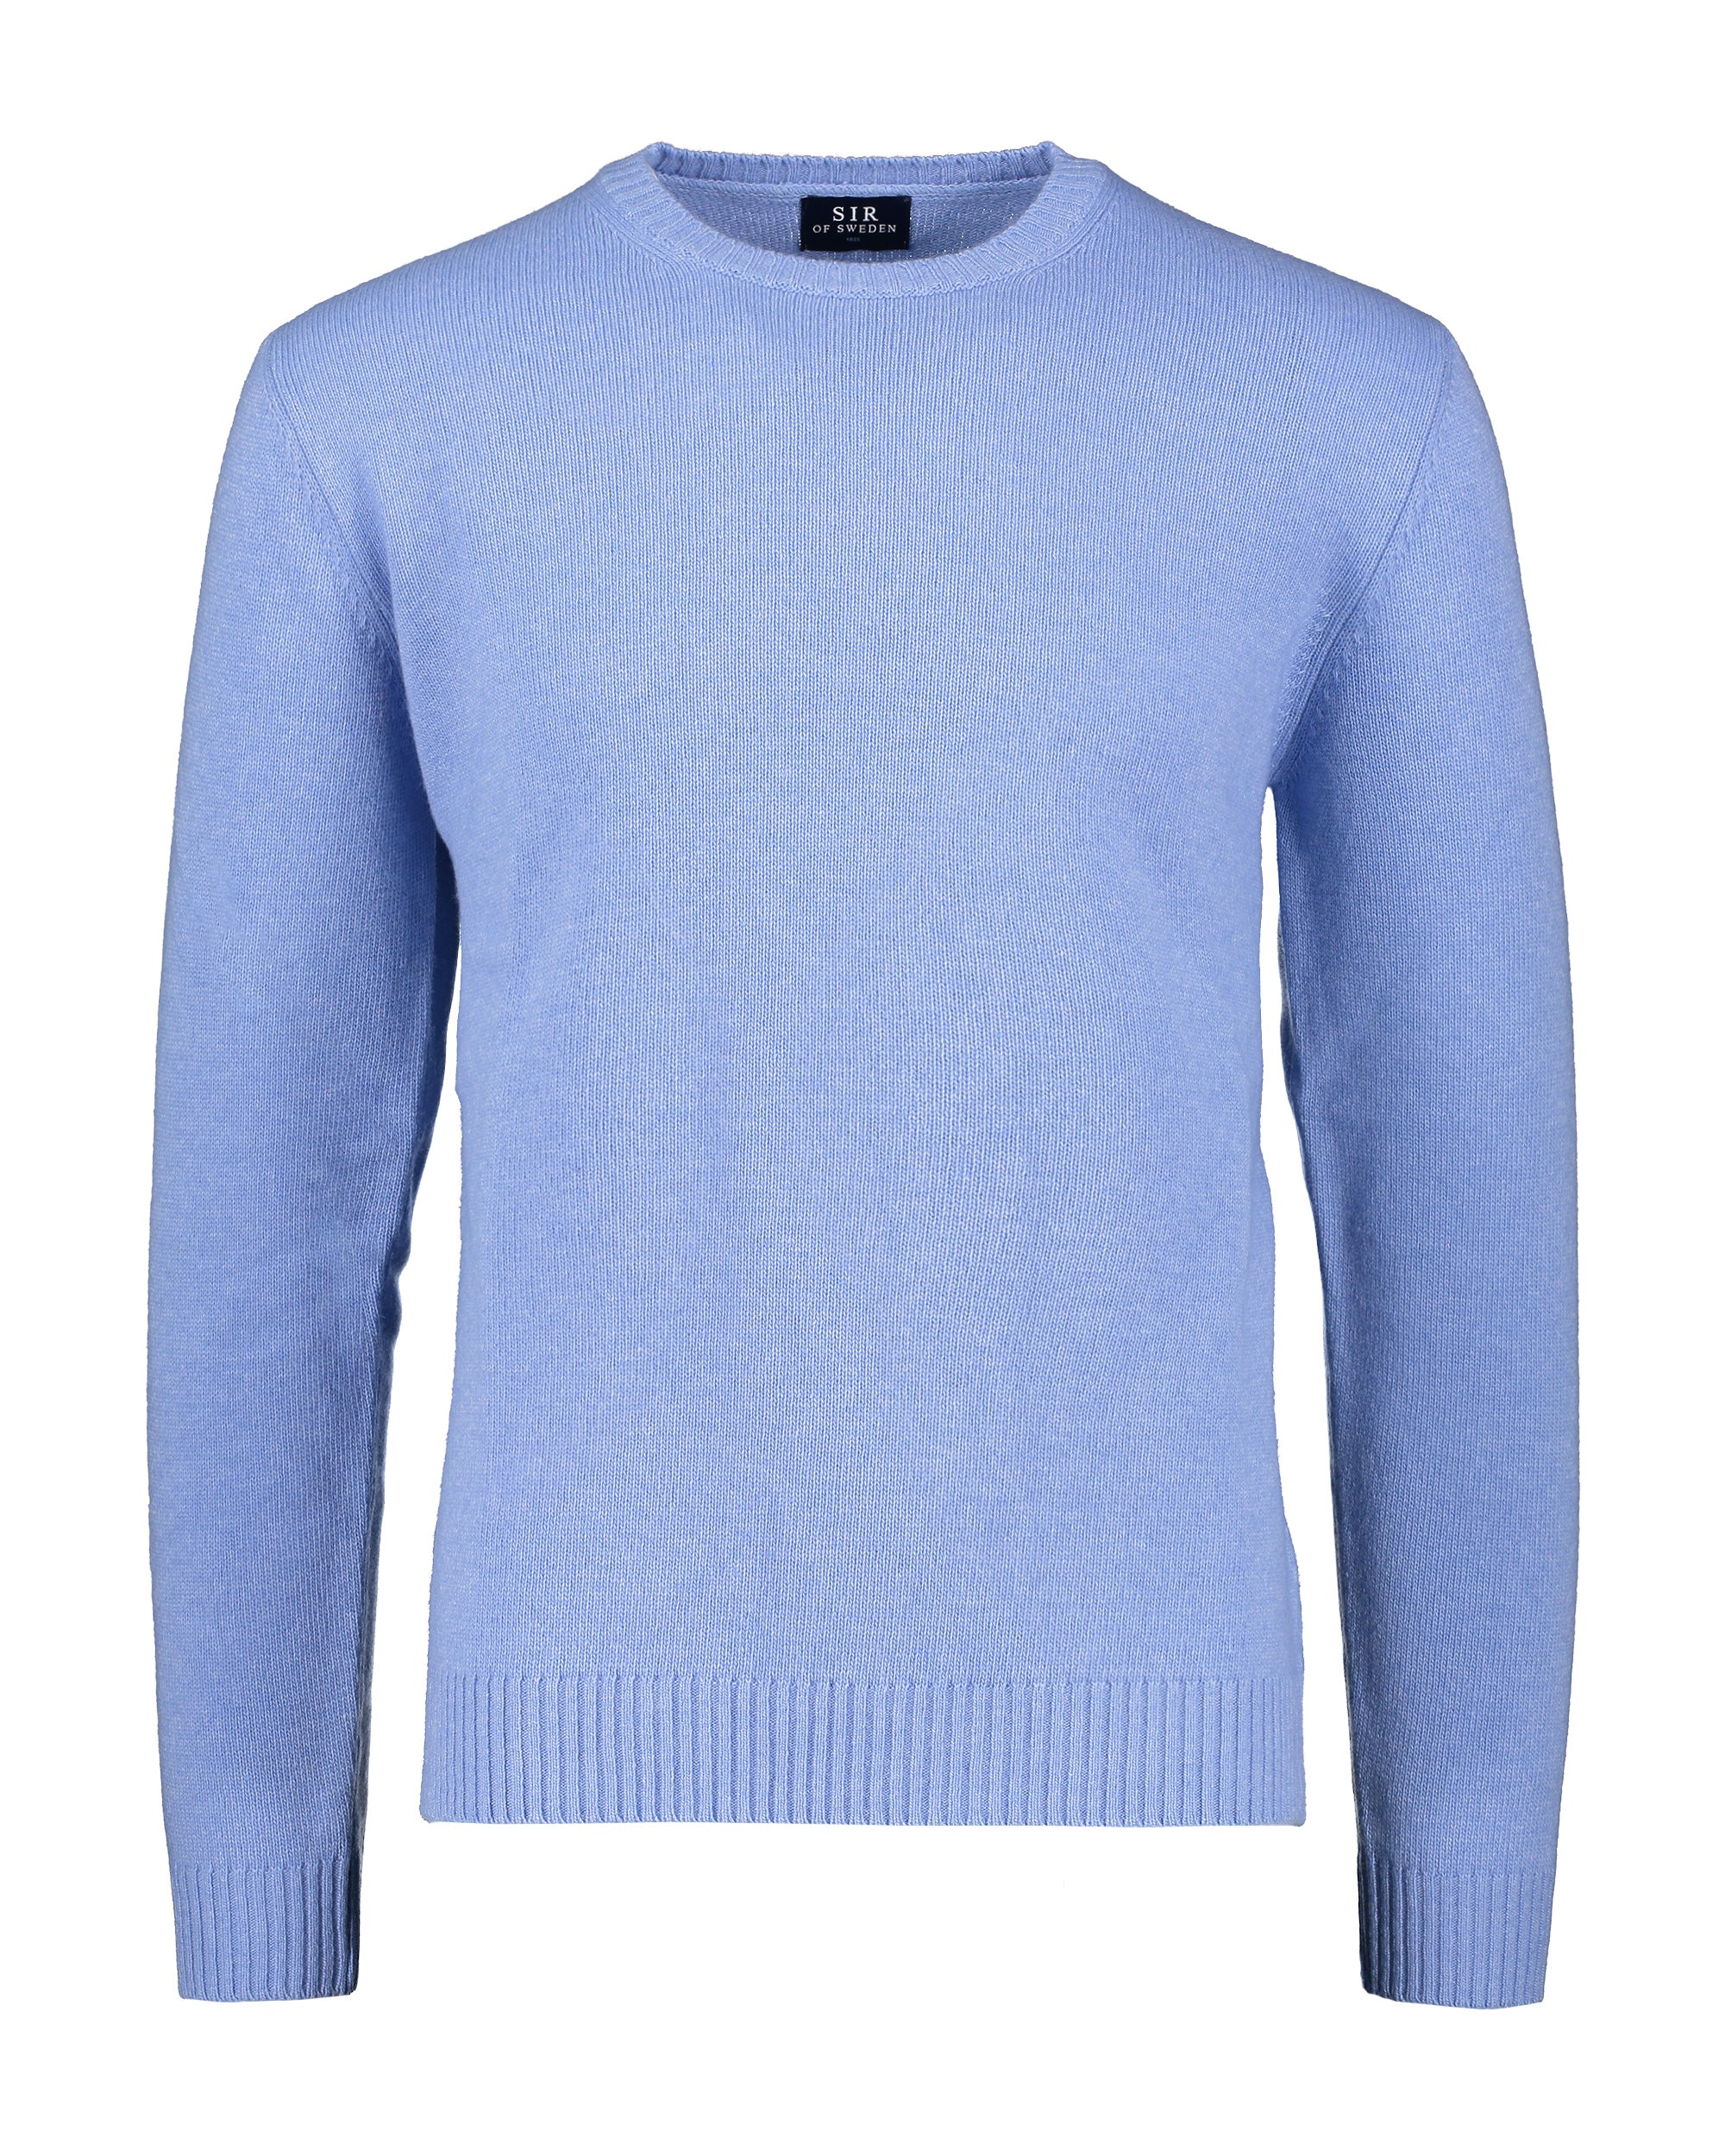 Harald Light Blue Crewneck Sweater